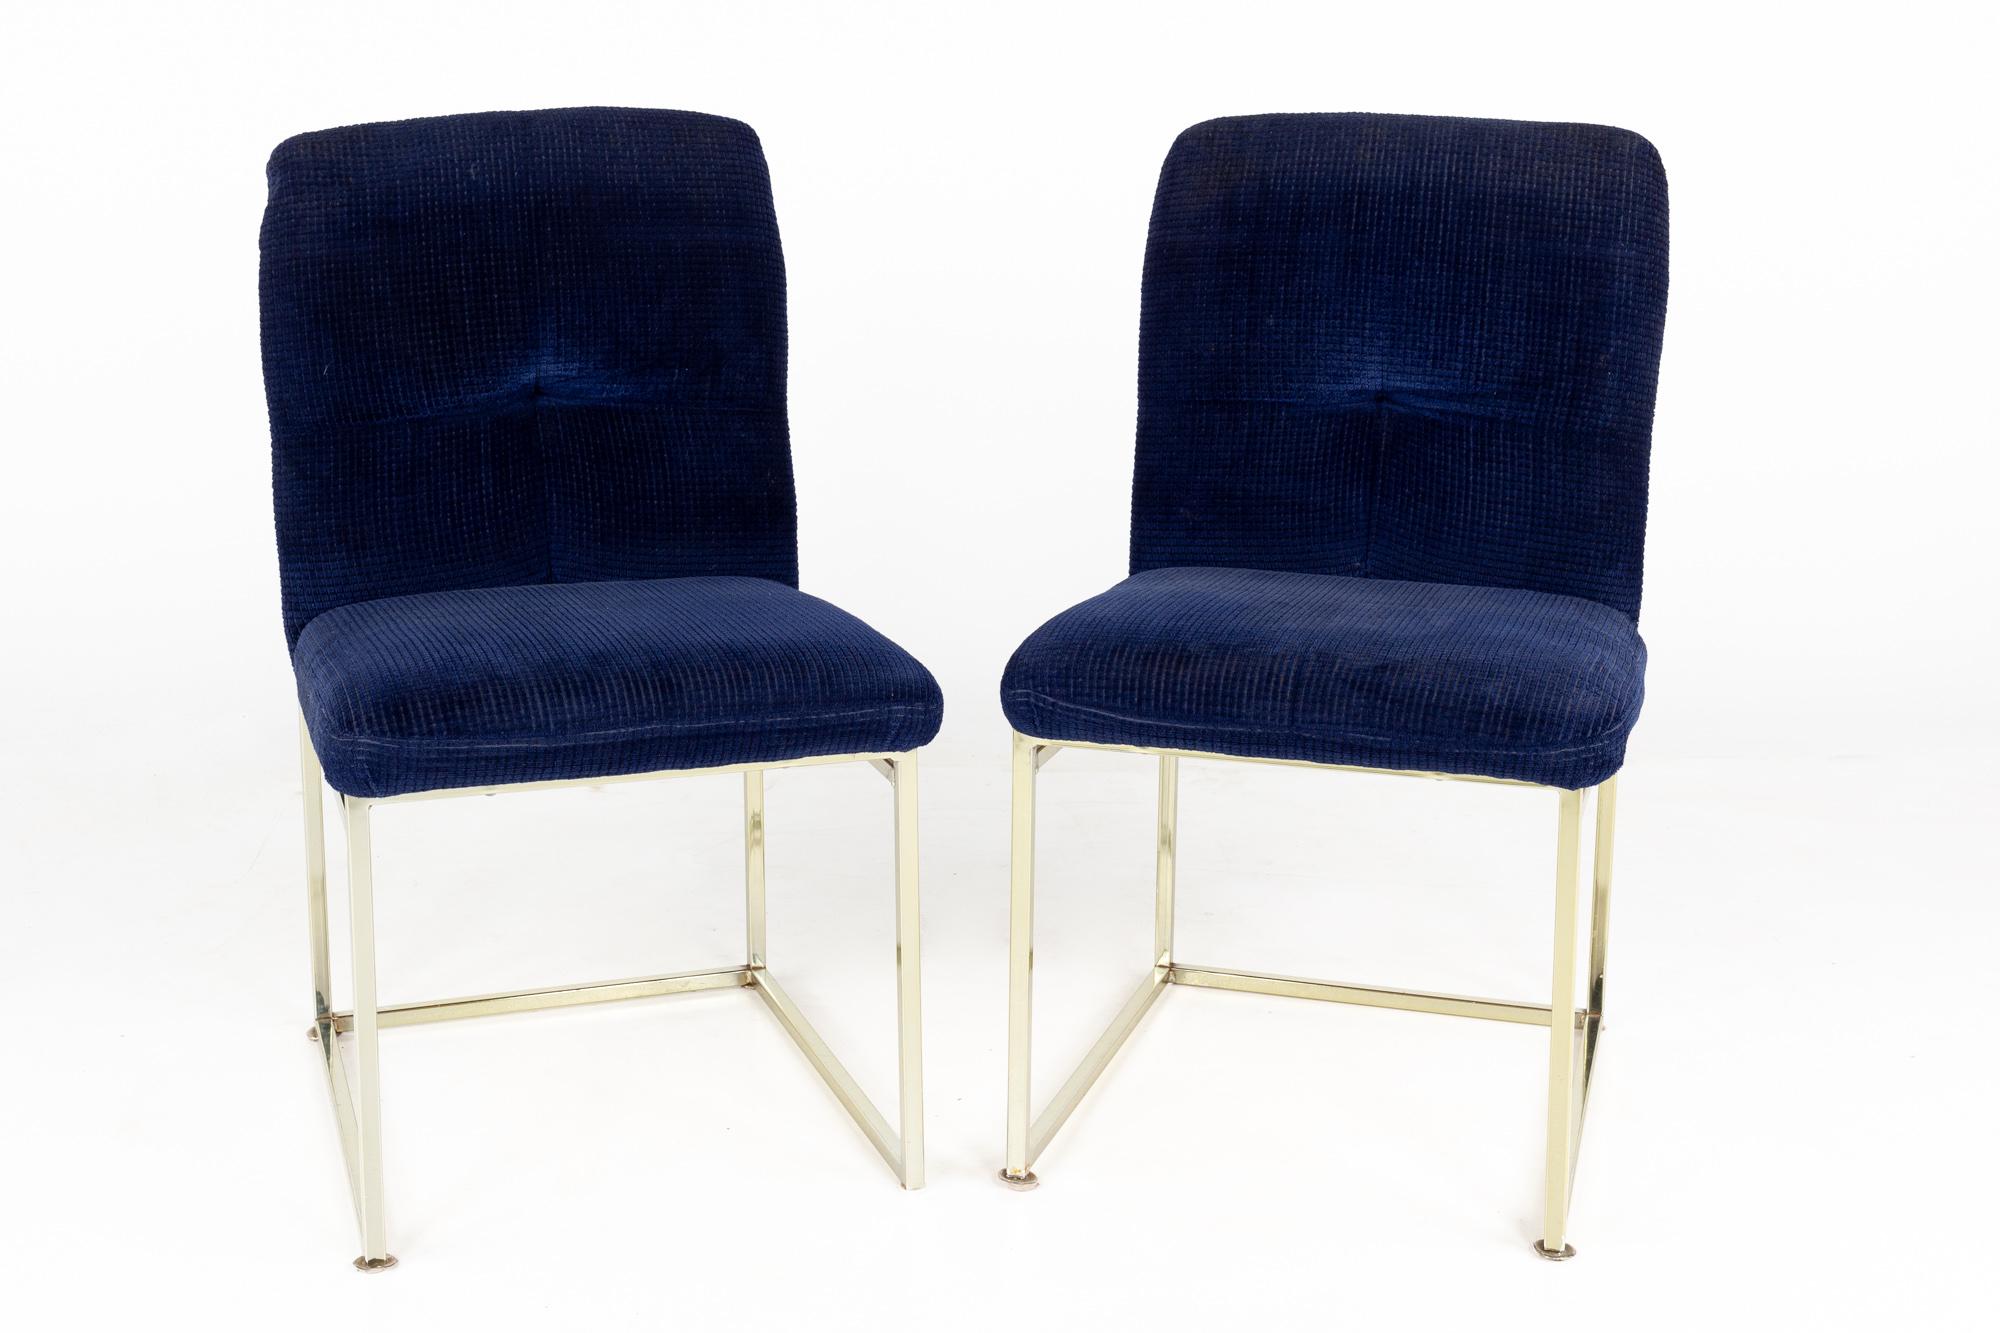 Milo Baughman Stil Chrom Esszimmerstühle - ein Paar

Jeder Stuhl misst: 23.25 breit x 19,5 tief x 33,25 Zoll hoch, mit einer Sitzhöhe von 18 Zoll

Dieses Set ist in einem guten Vintage-Zustand mit kleinen Spuren, Dellen und Gebrauchsspuren.

Zu den